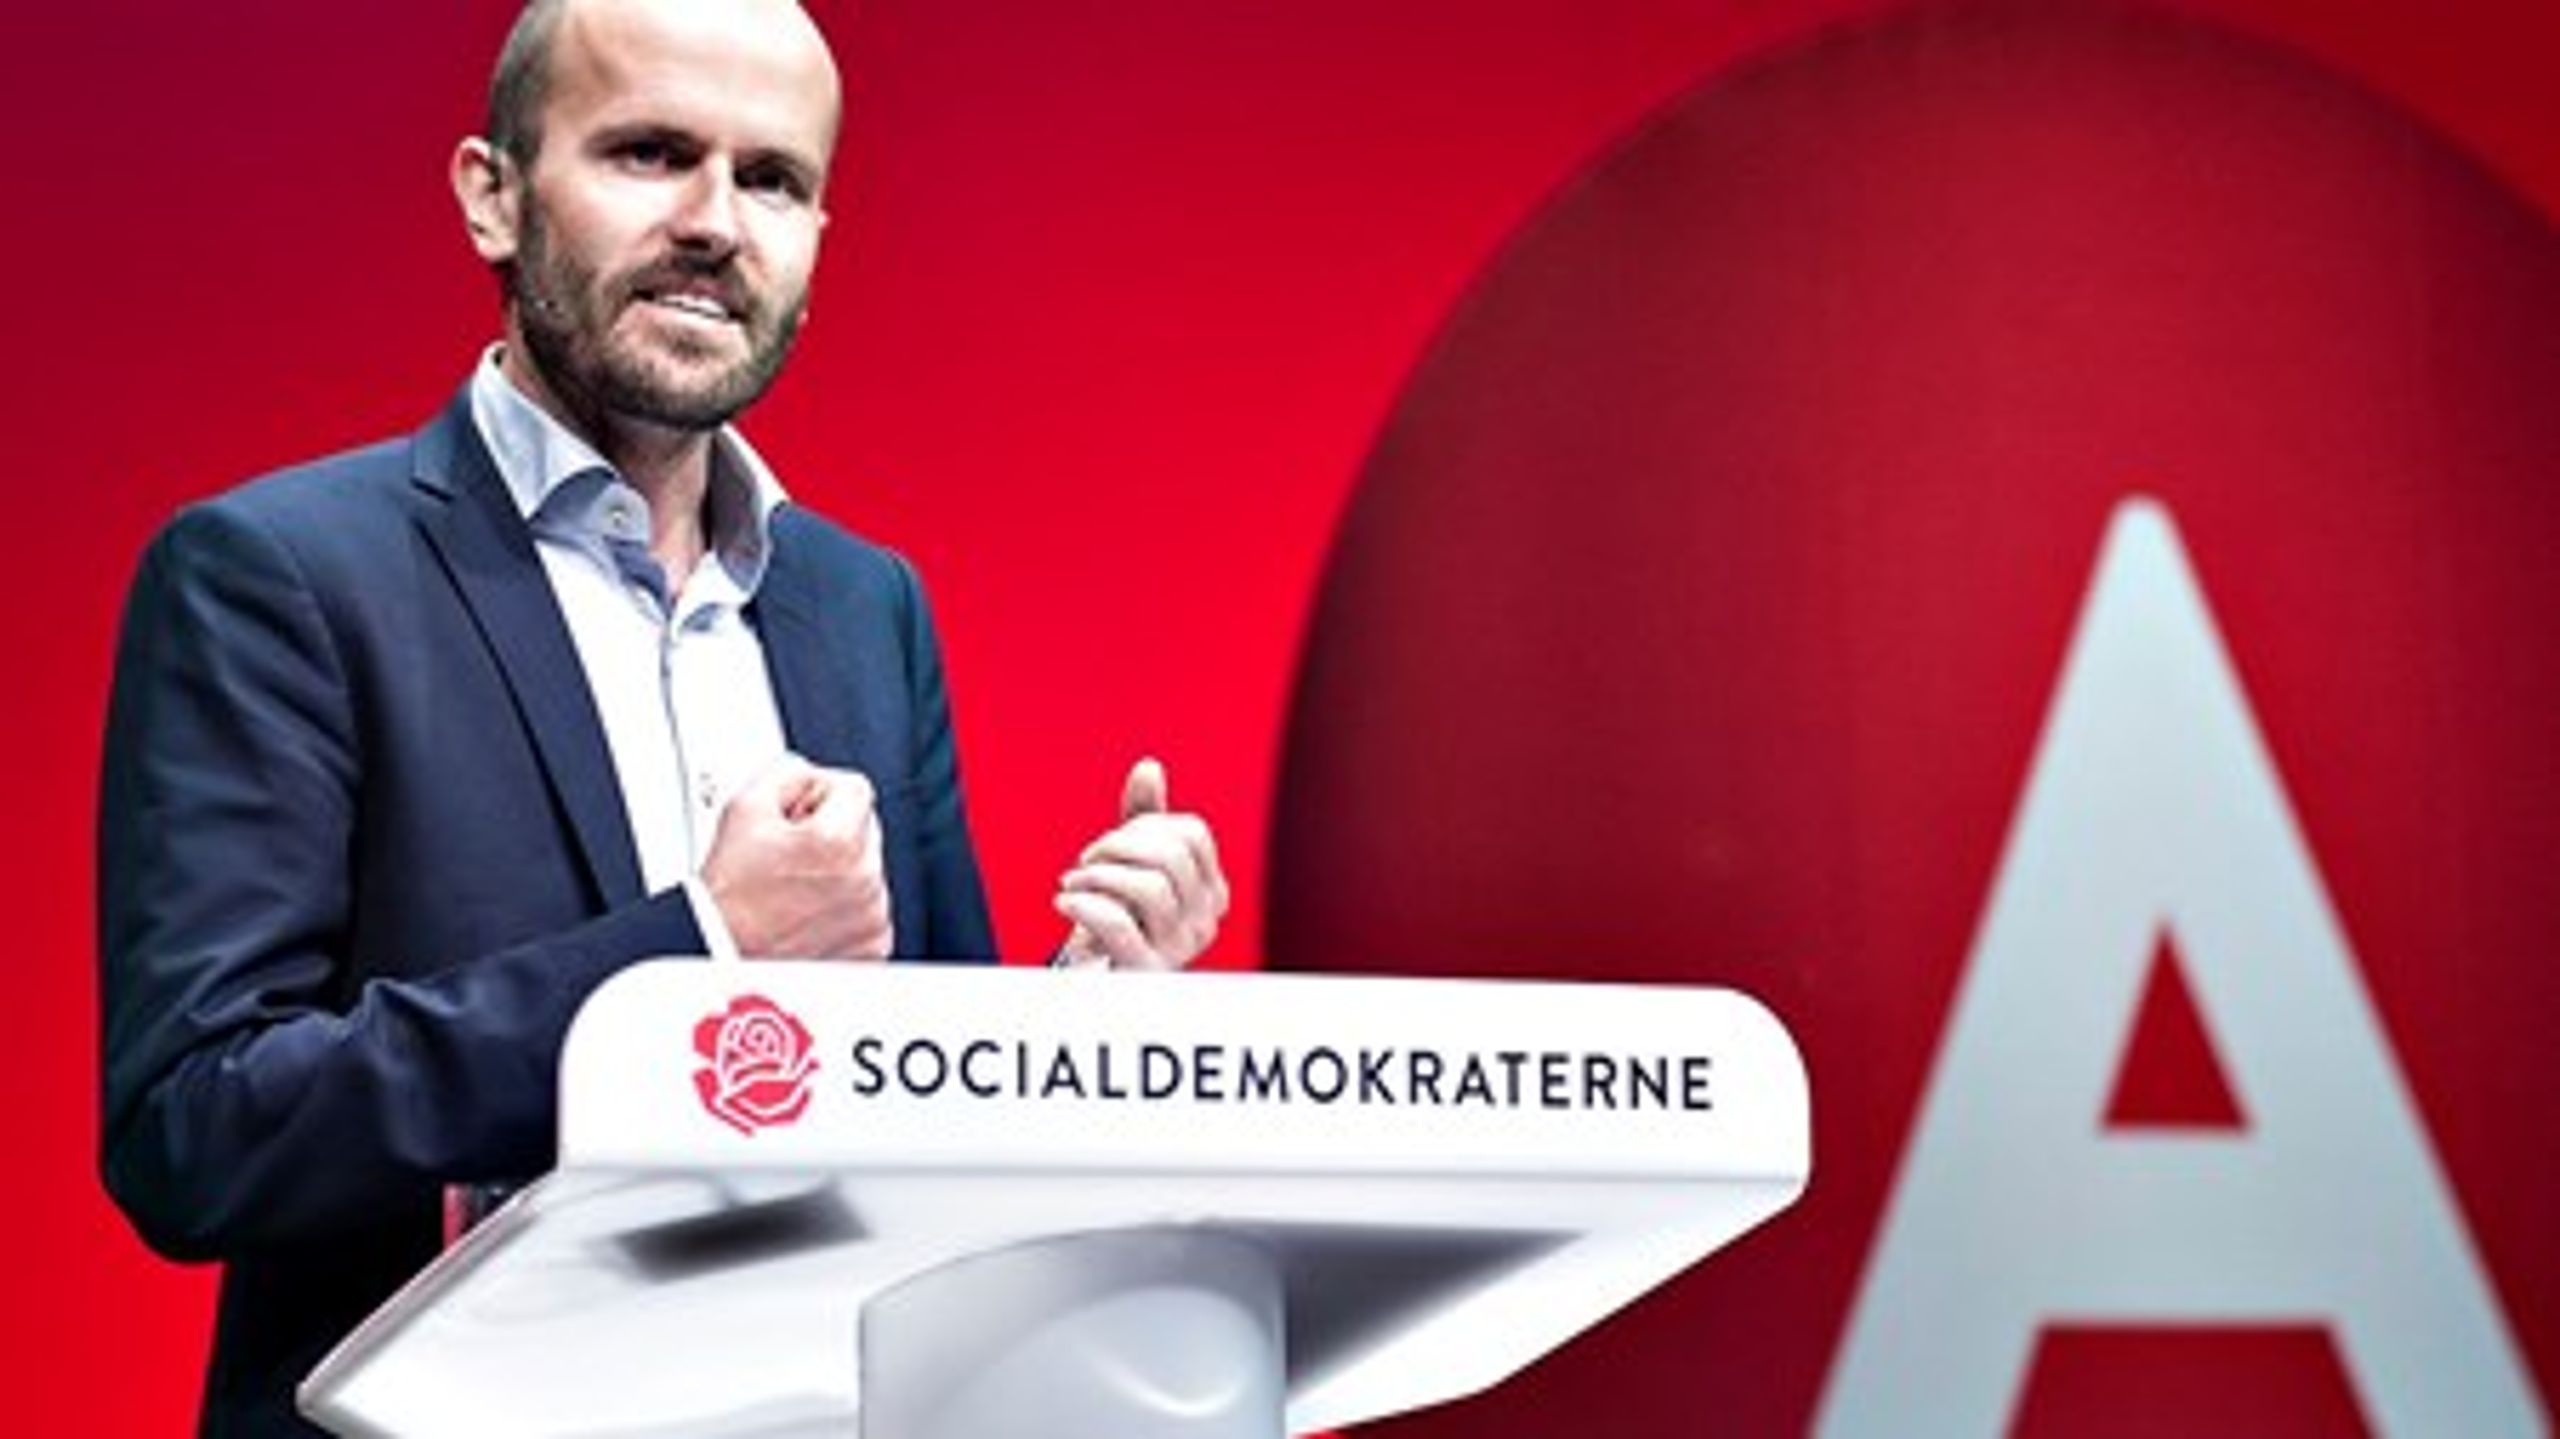 Socialdemokraterne tabte regeringsmagten, men vandt valget, konkluderede partisekretær Lars Midtiby på kongressen i Aalborg.